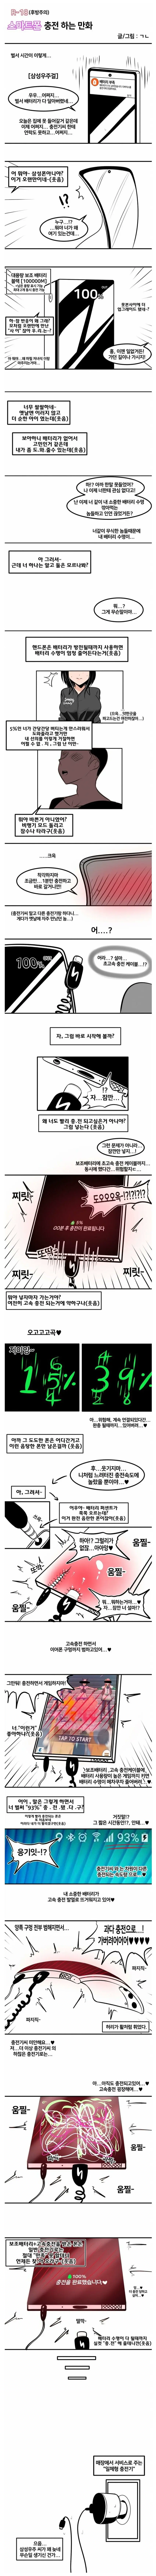 ㅇㅎ) 스마트폰 충전하는 만화 | mbong.kr 엠봉